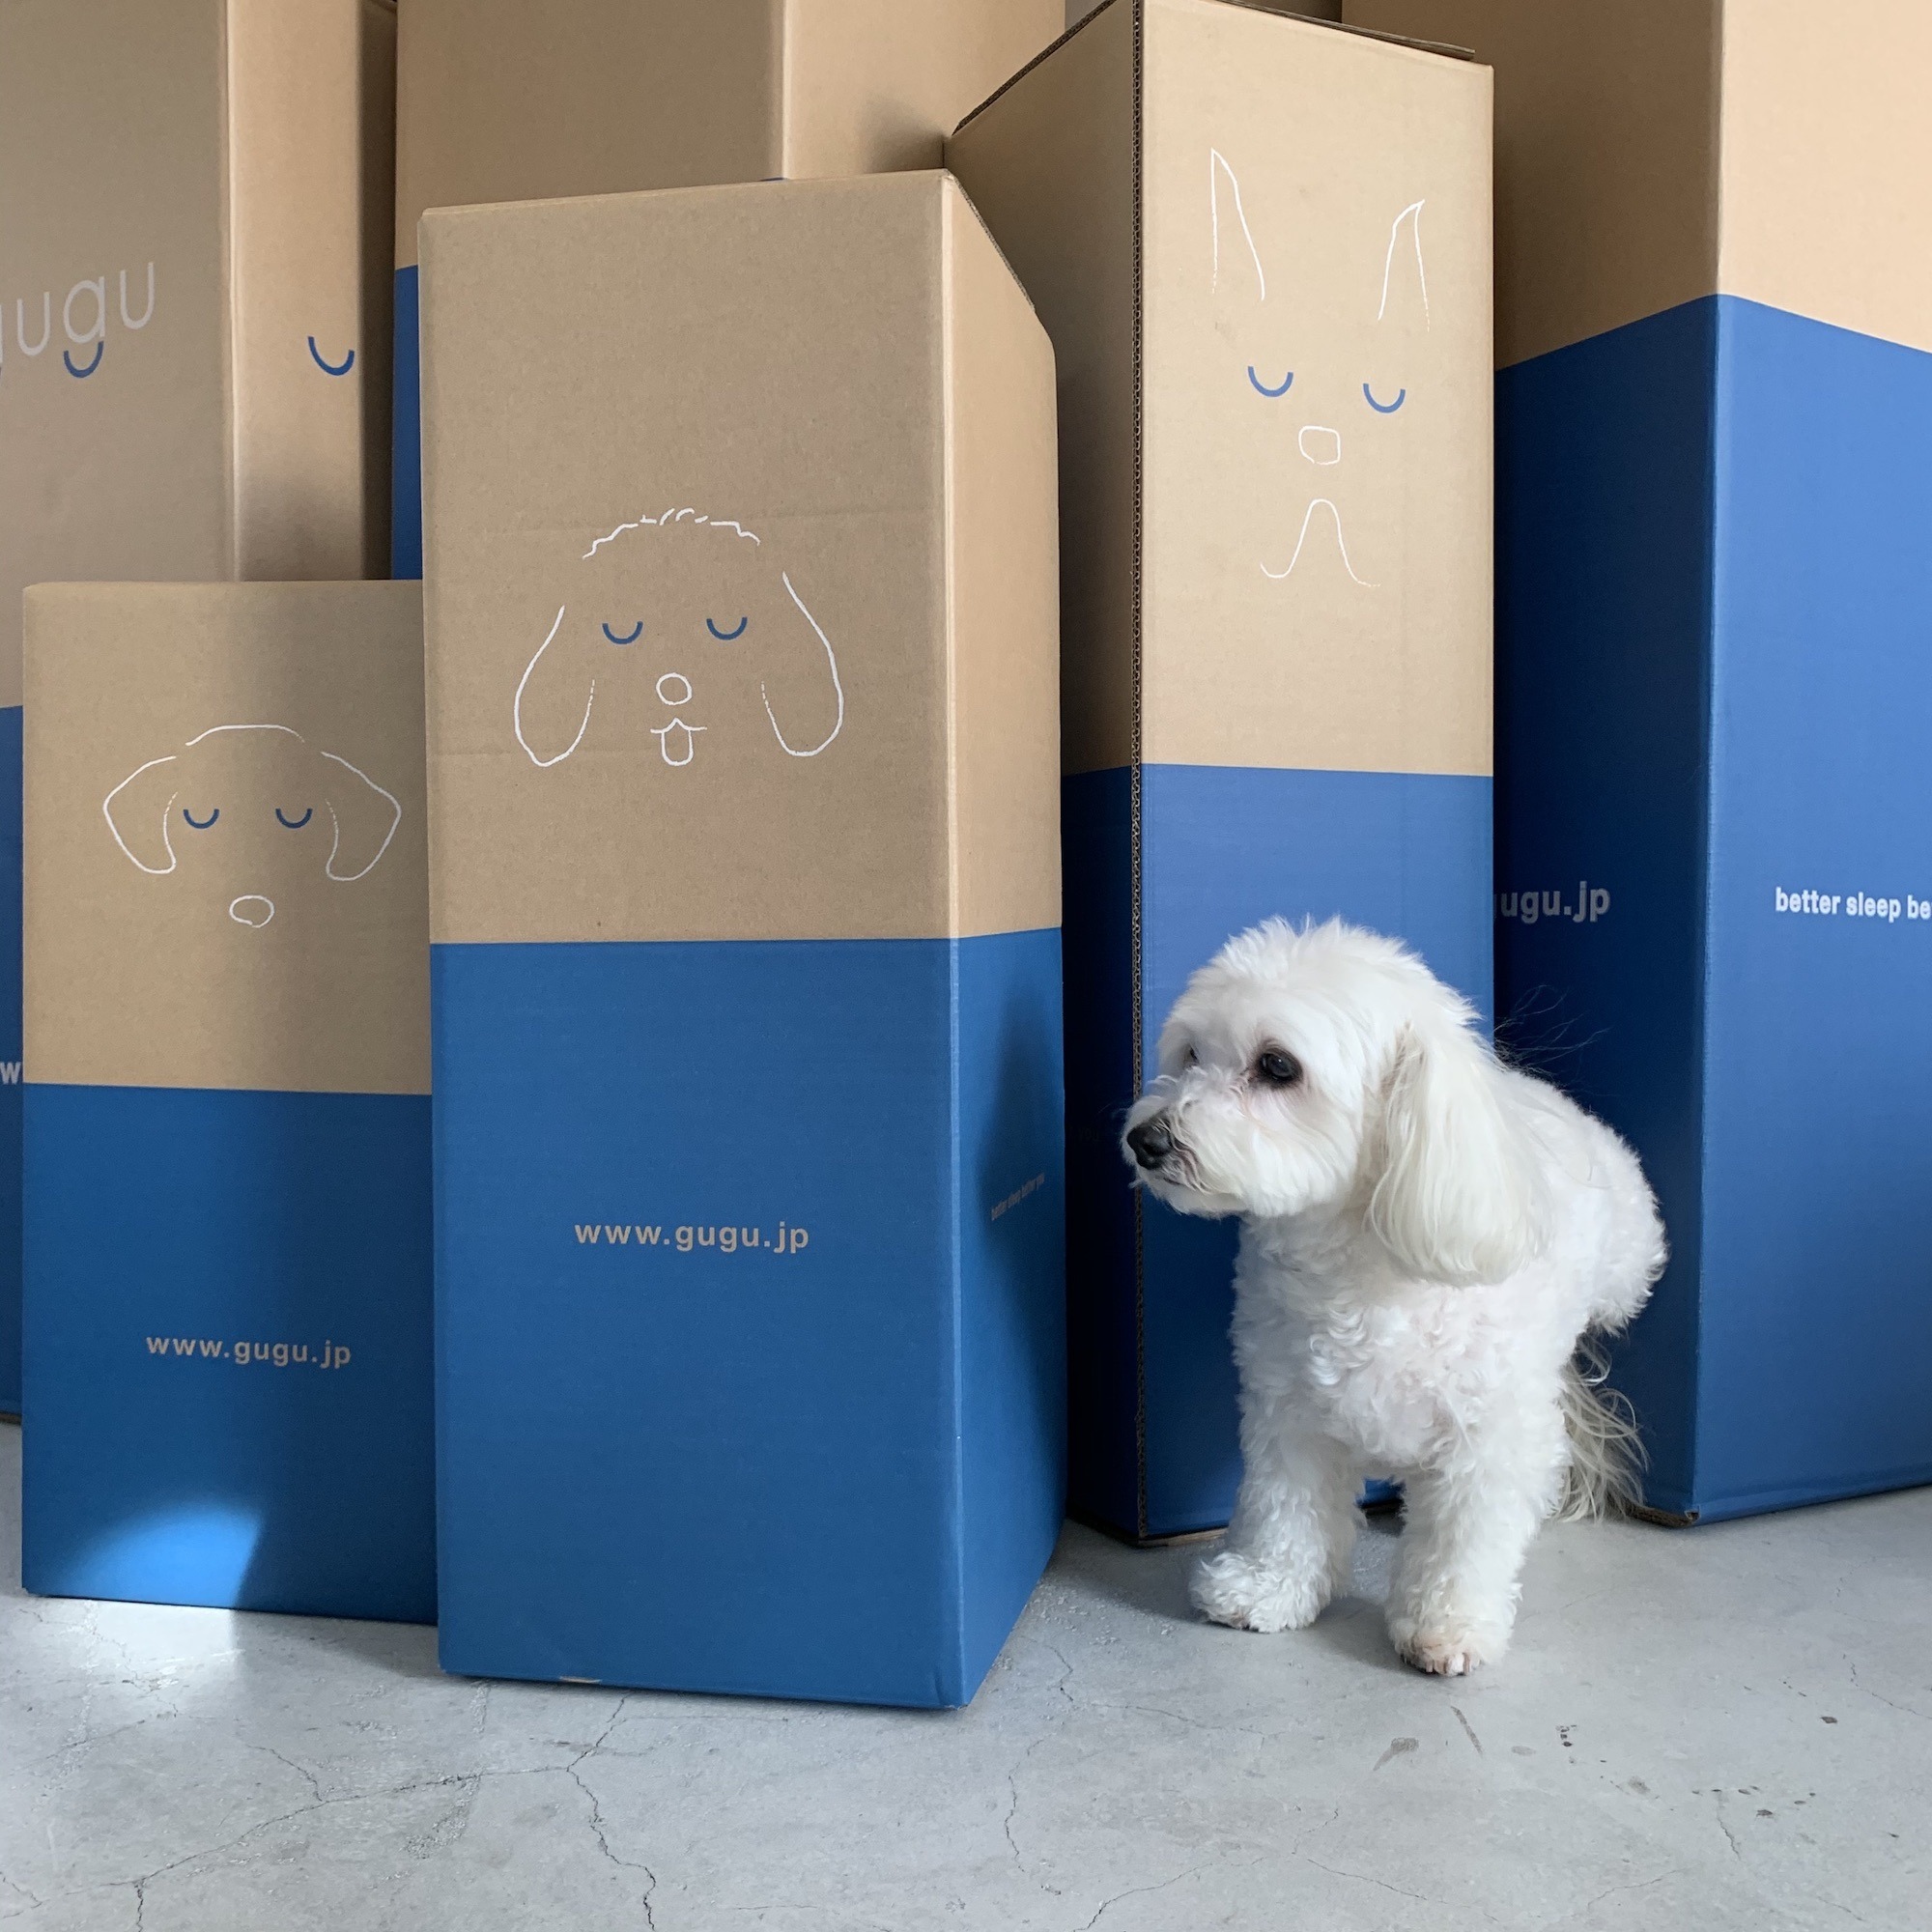 犬用ベッド「guguドギー」、大型ペットイベントの出展情報を発表